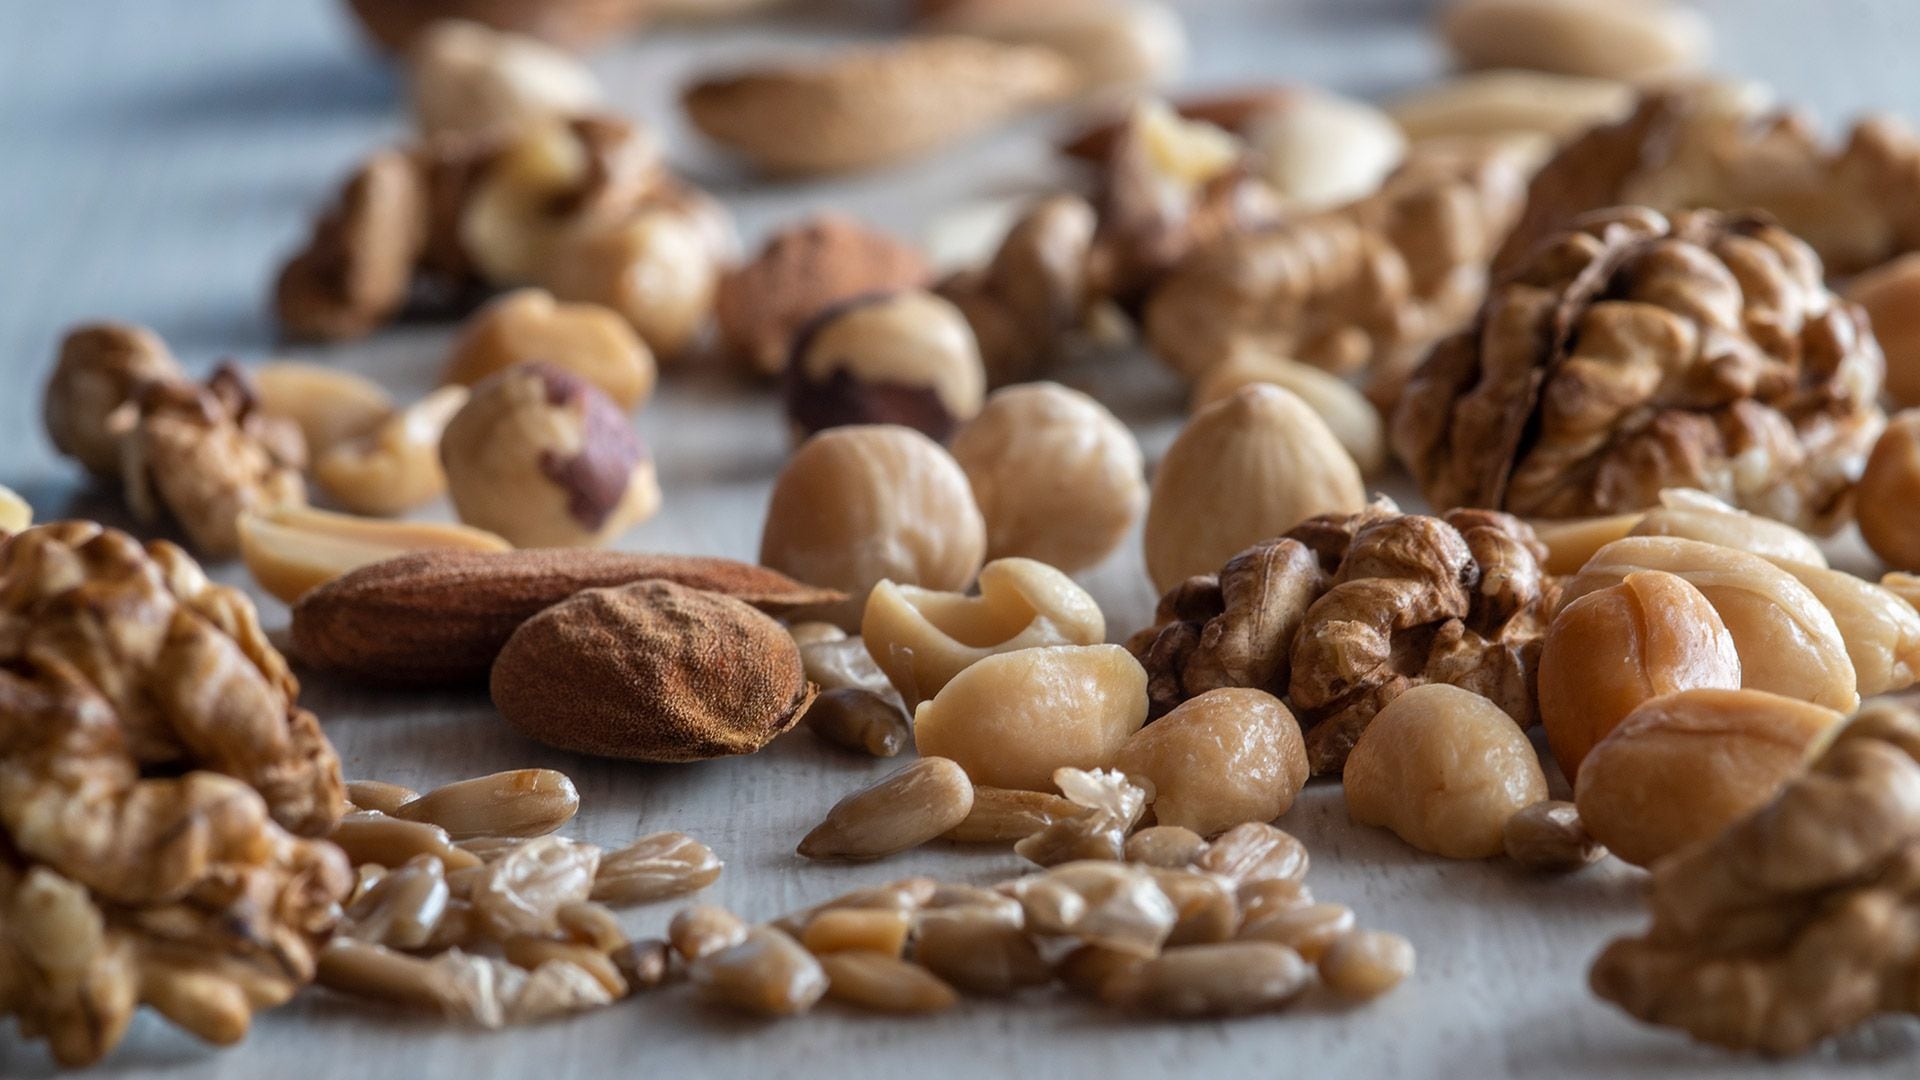 Los investigadores también encontraron que aquellos que comían snacks de alta calidad nutricional como nueces, fruta fresca y barras de granola tenían mejor salud metabólica y no tenían tanta hambre